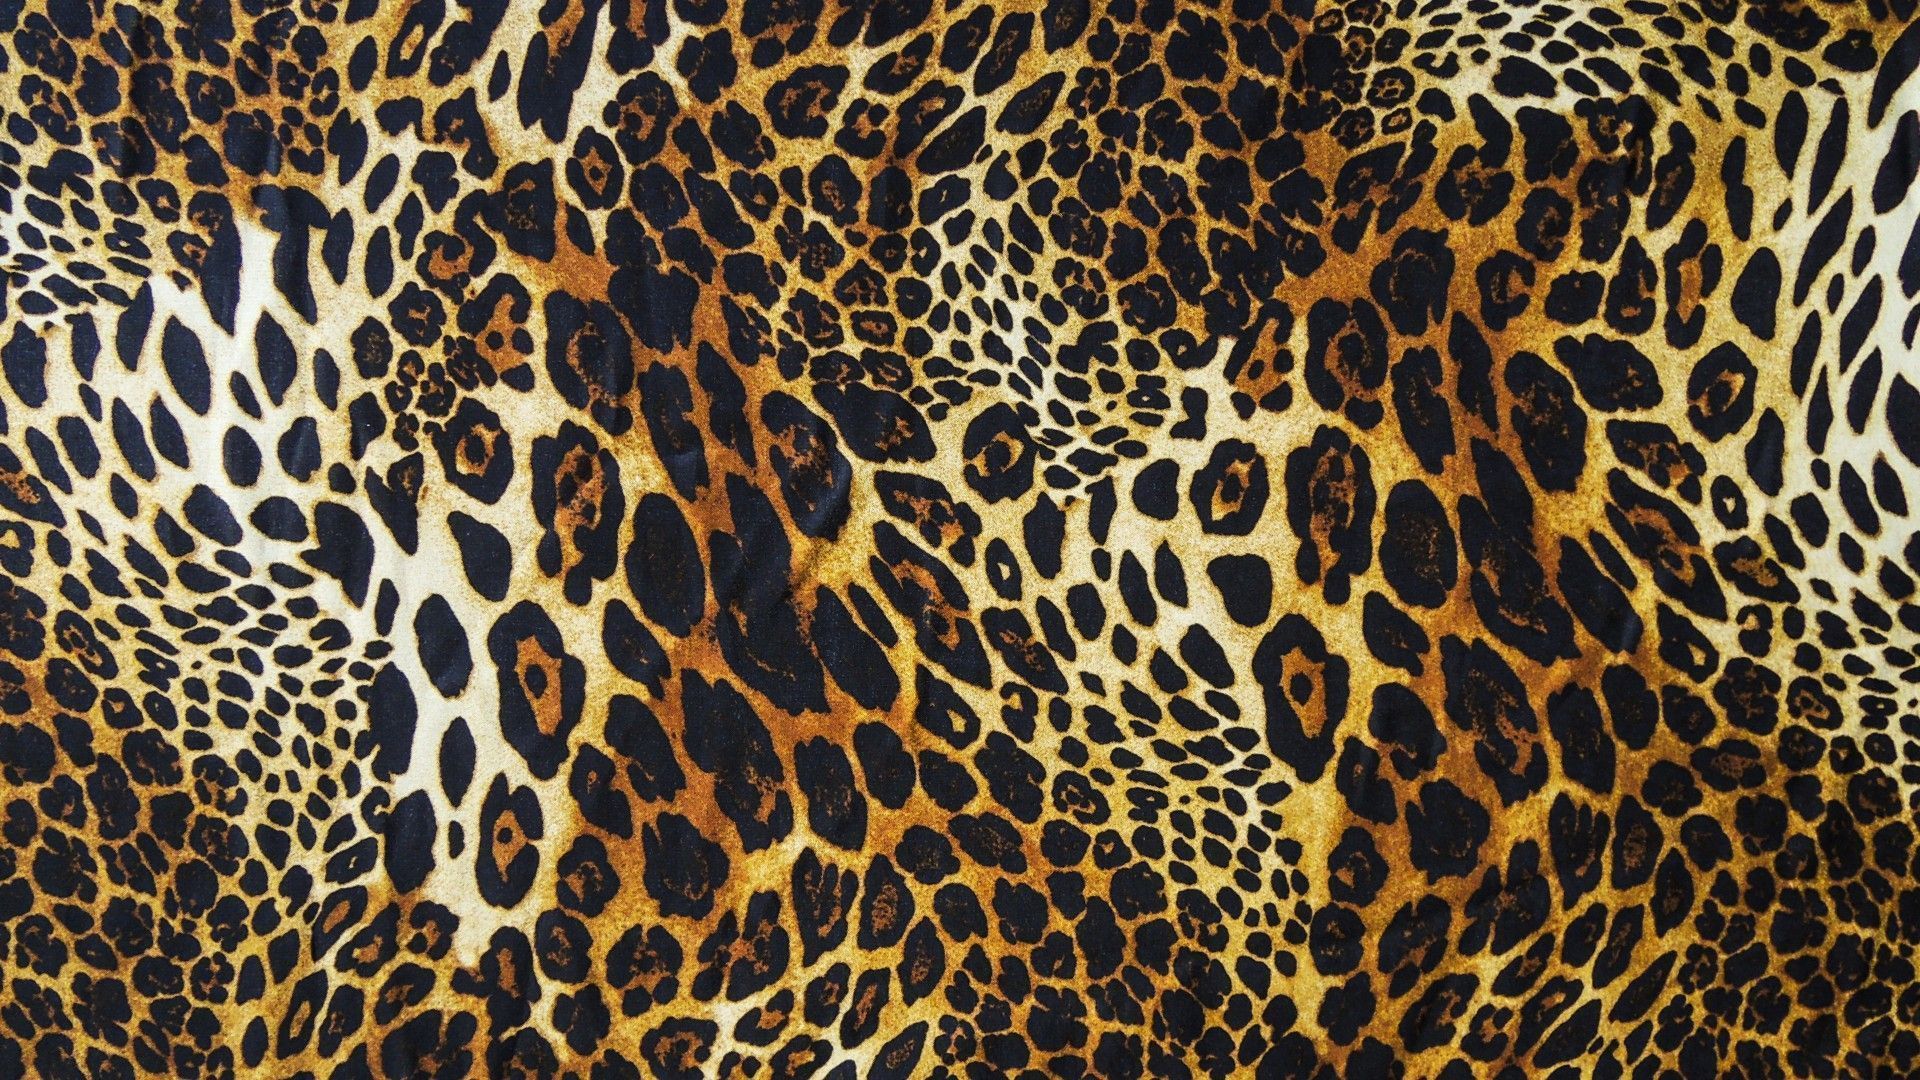 Leopard Print Wallpapers HD | PixelsTalk.Net